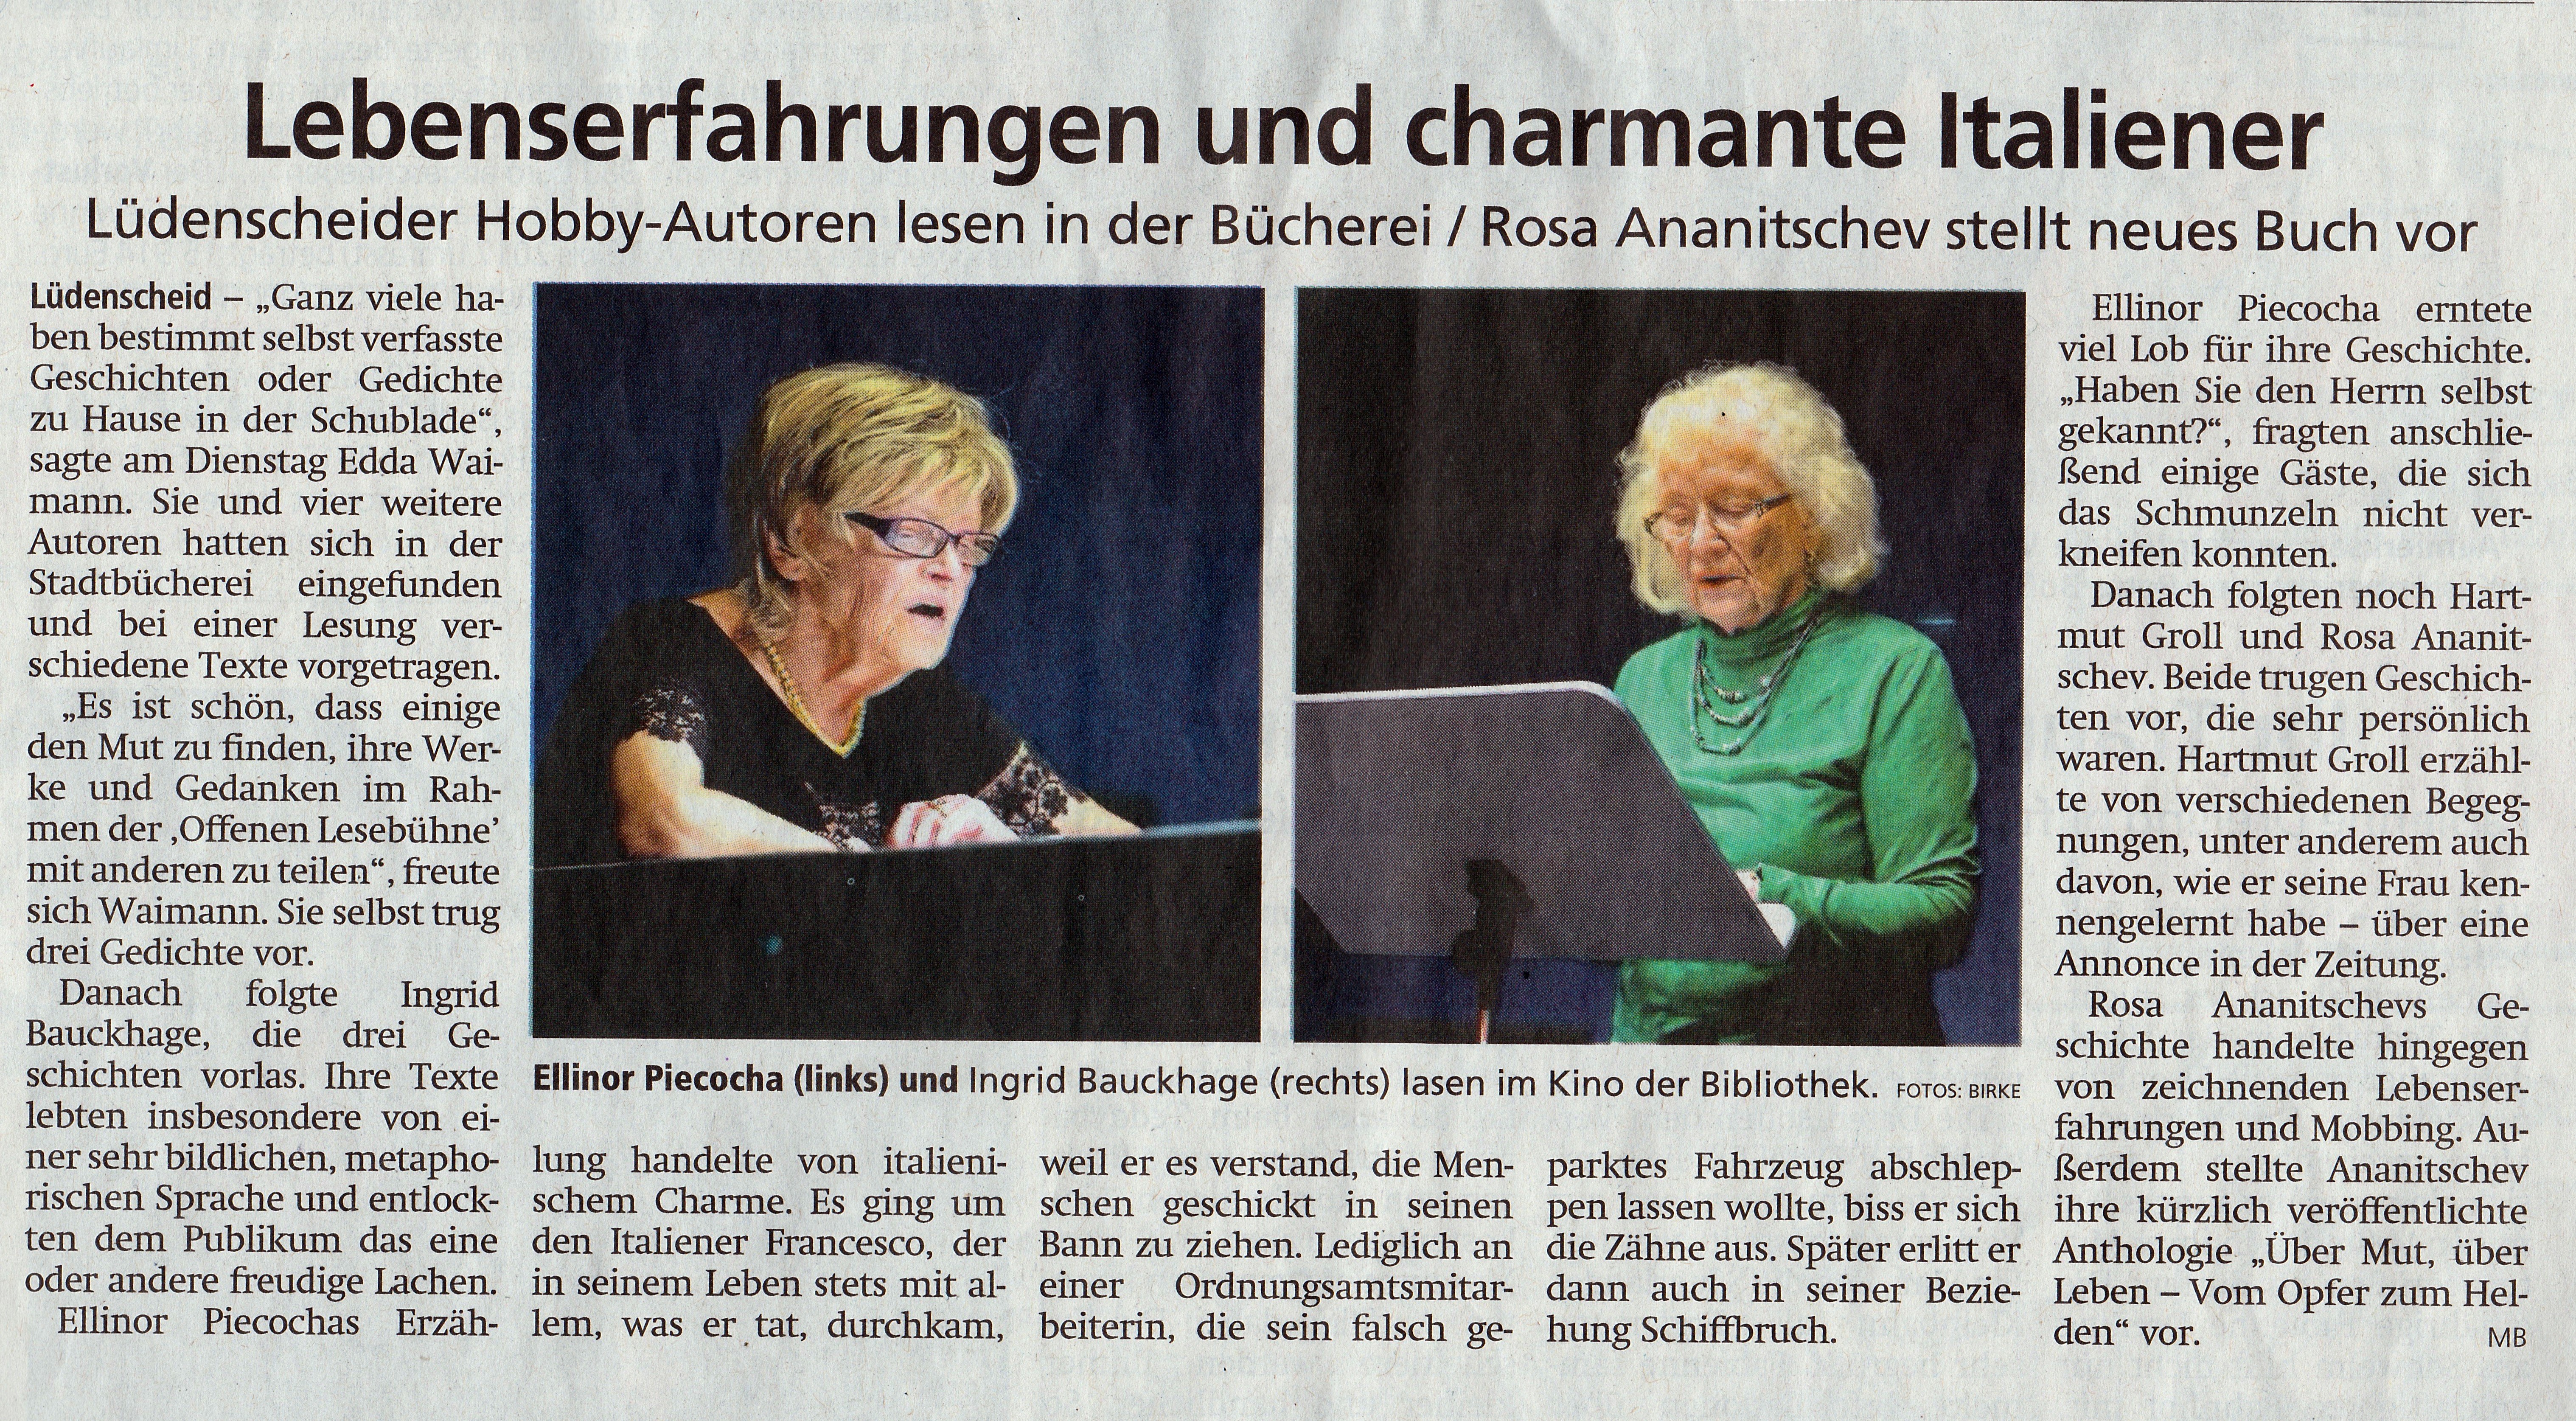 Artikel in "Lüdenscheider Nachrichten" über die "offene Lesebühne", vom 06.06.2019